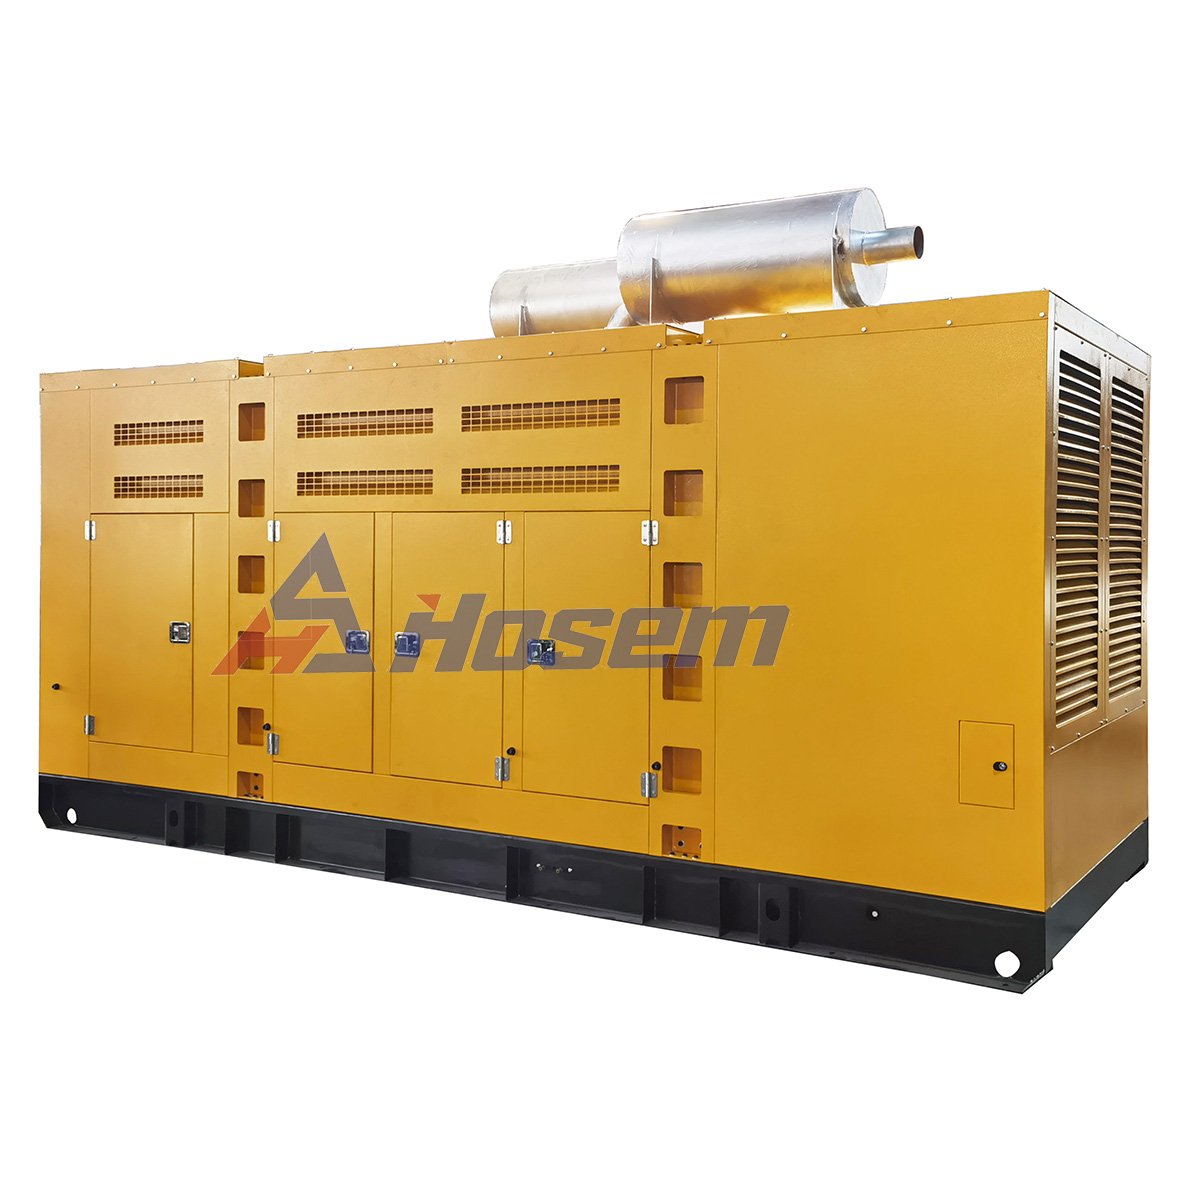 585 kW dieselgenerator van Doosan